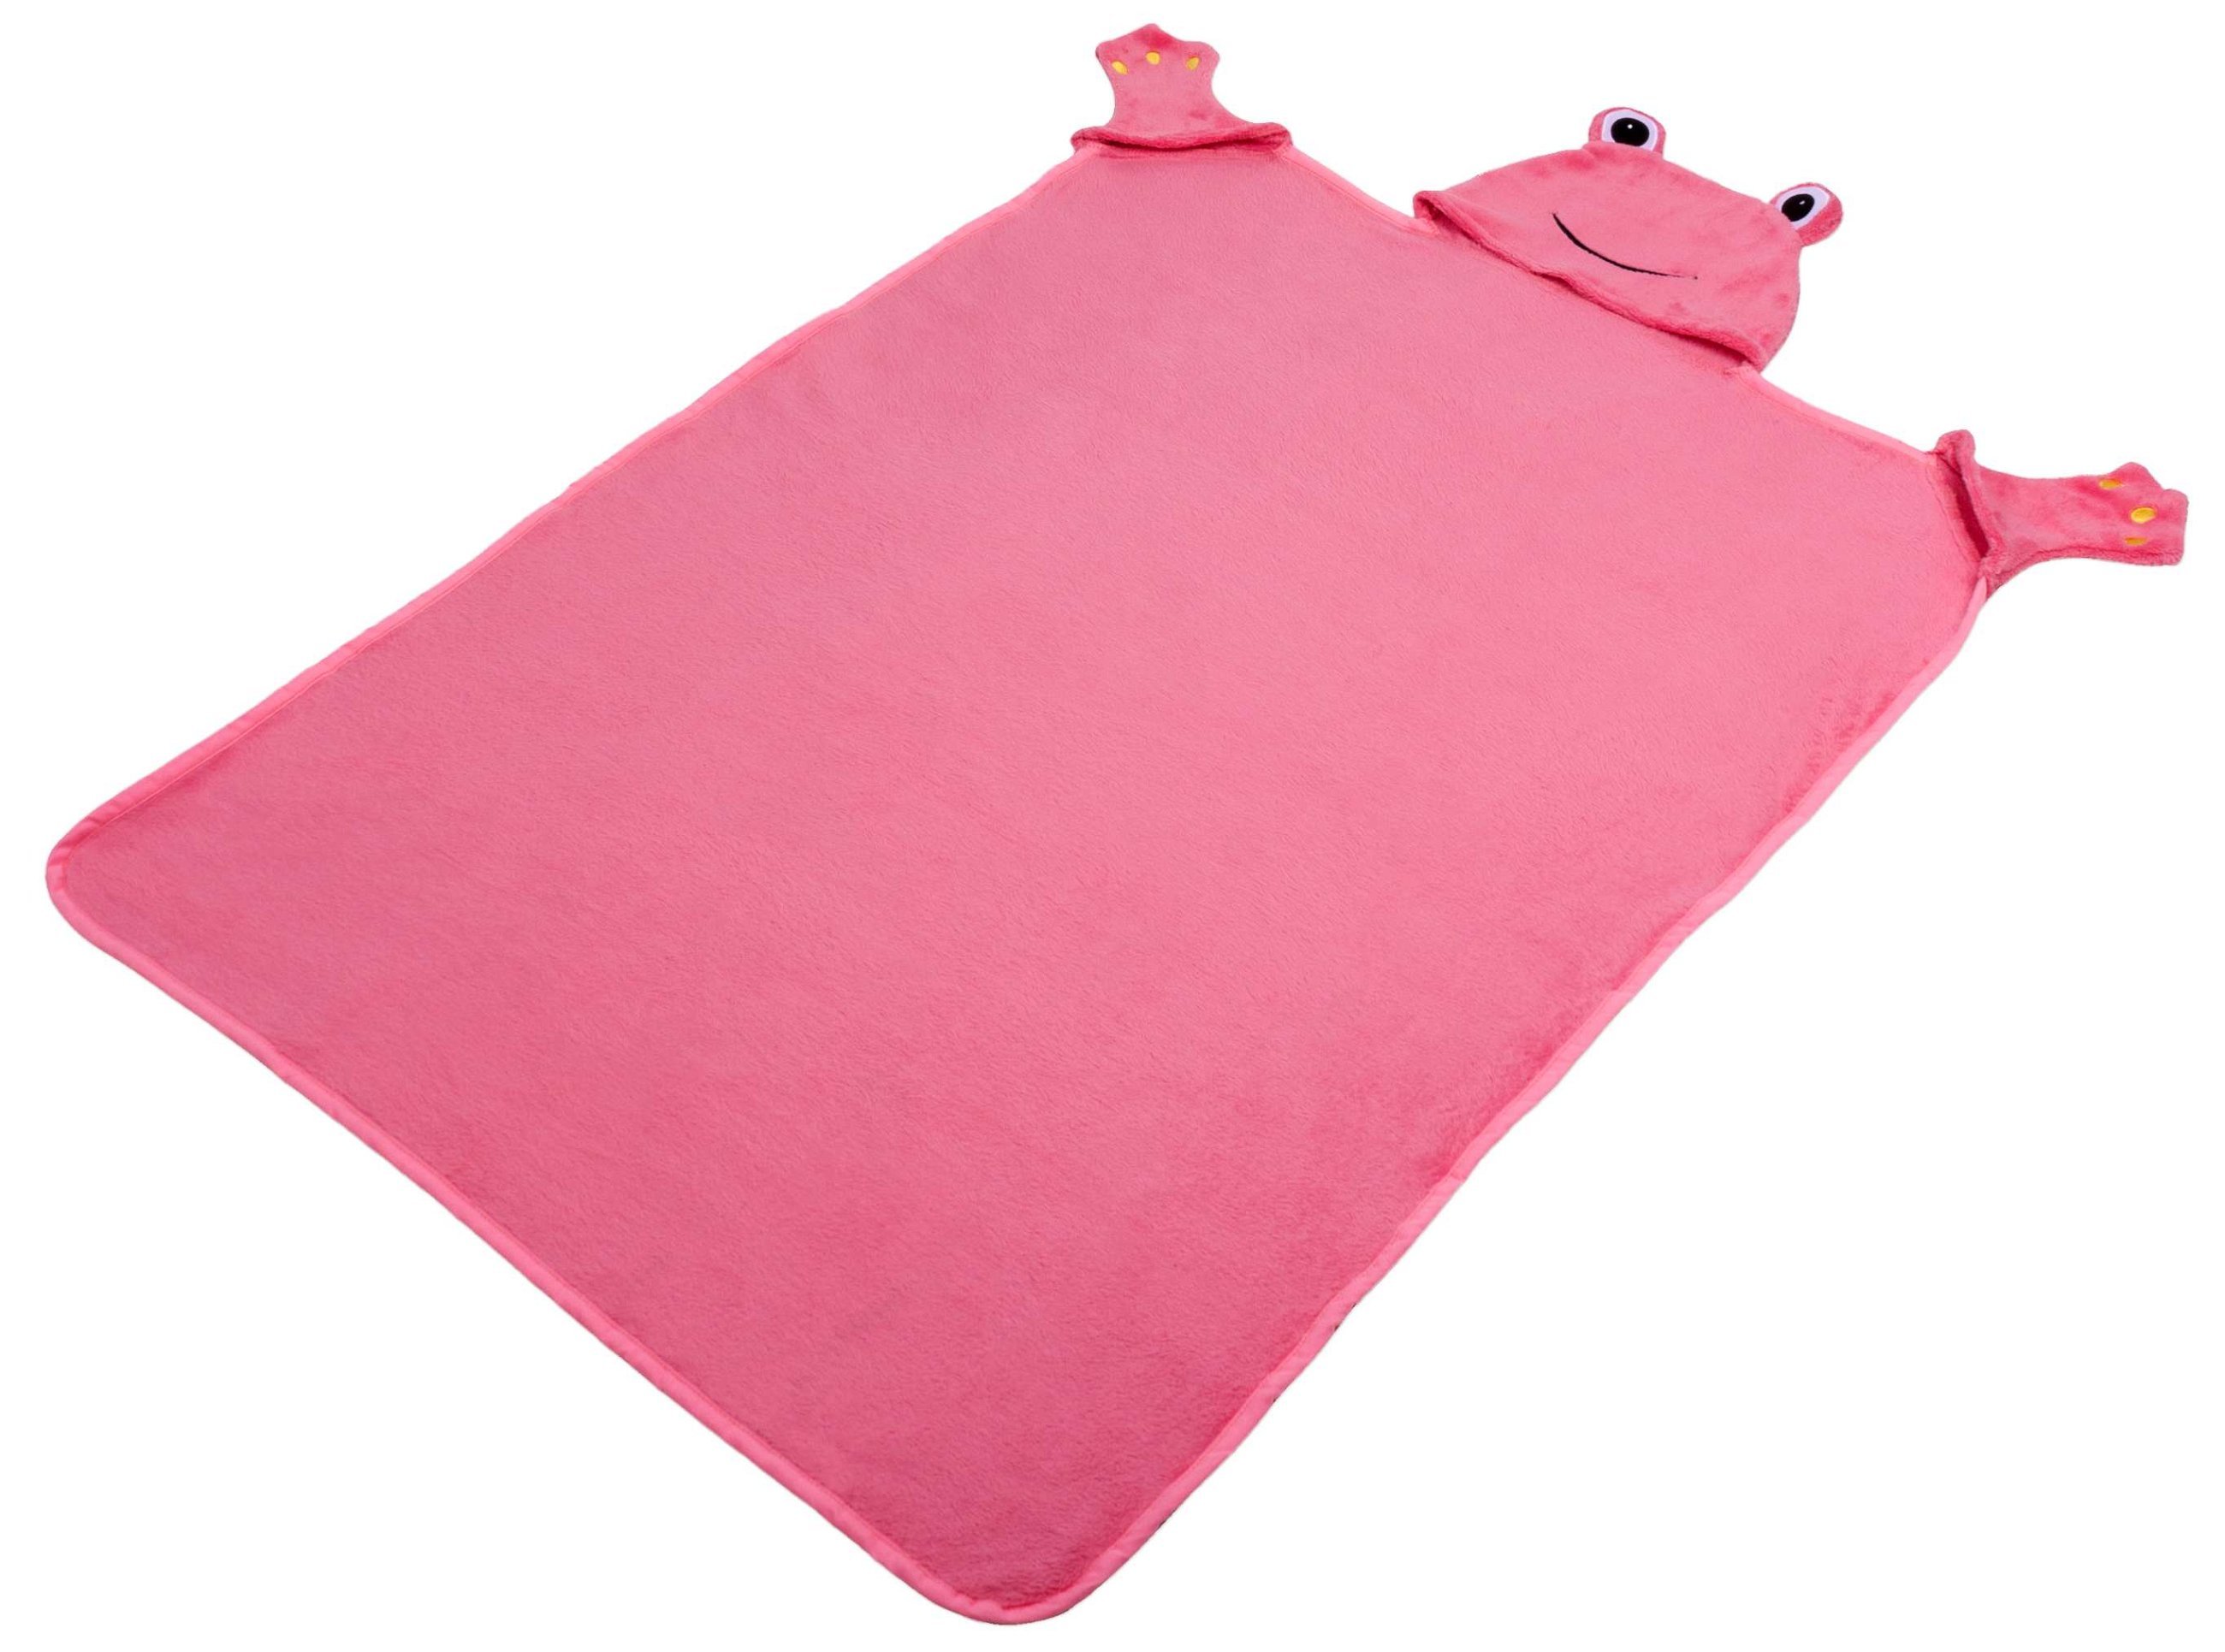 Froggy kinderdeken, knuffeldoekje, pluche deken met kap en wanten, roze 130 x 100 cm